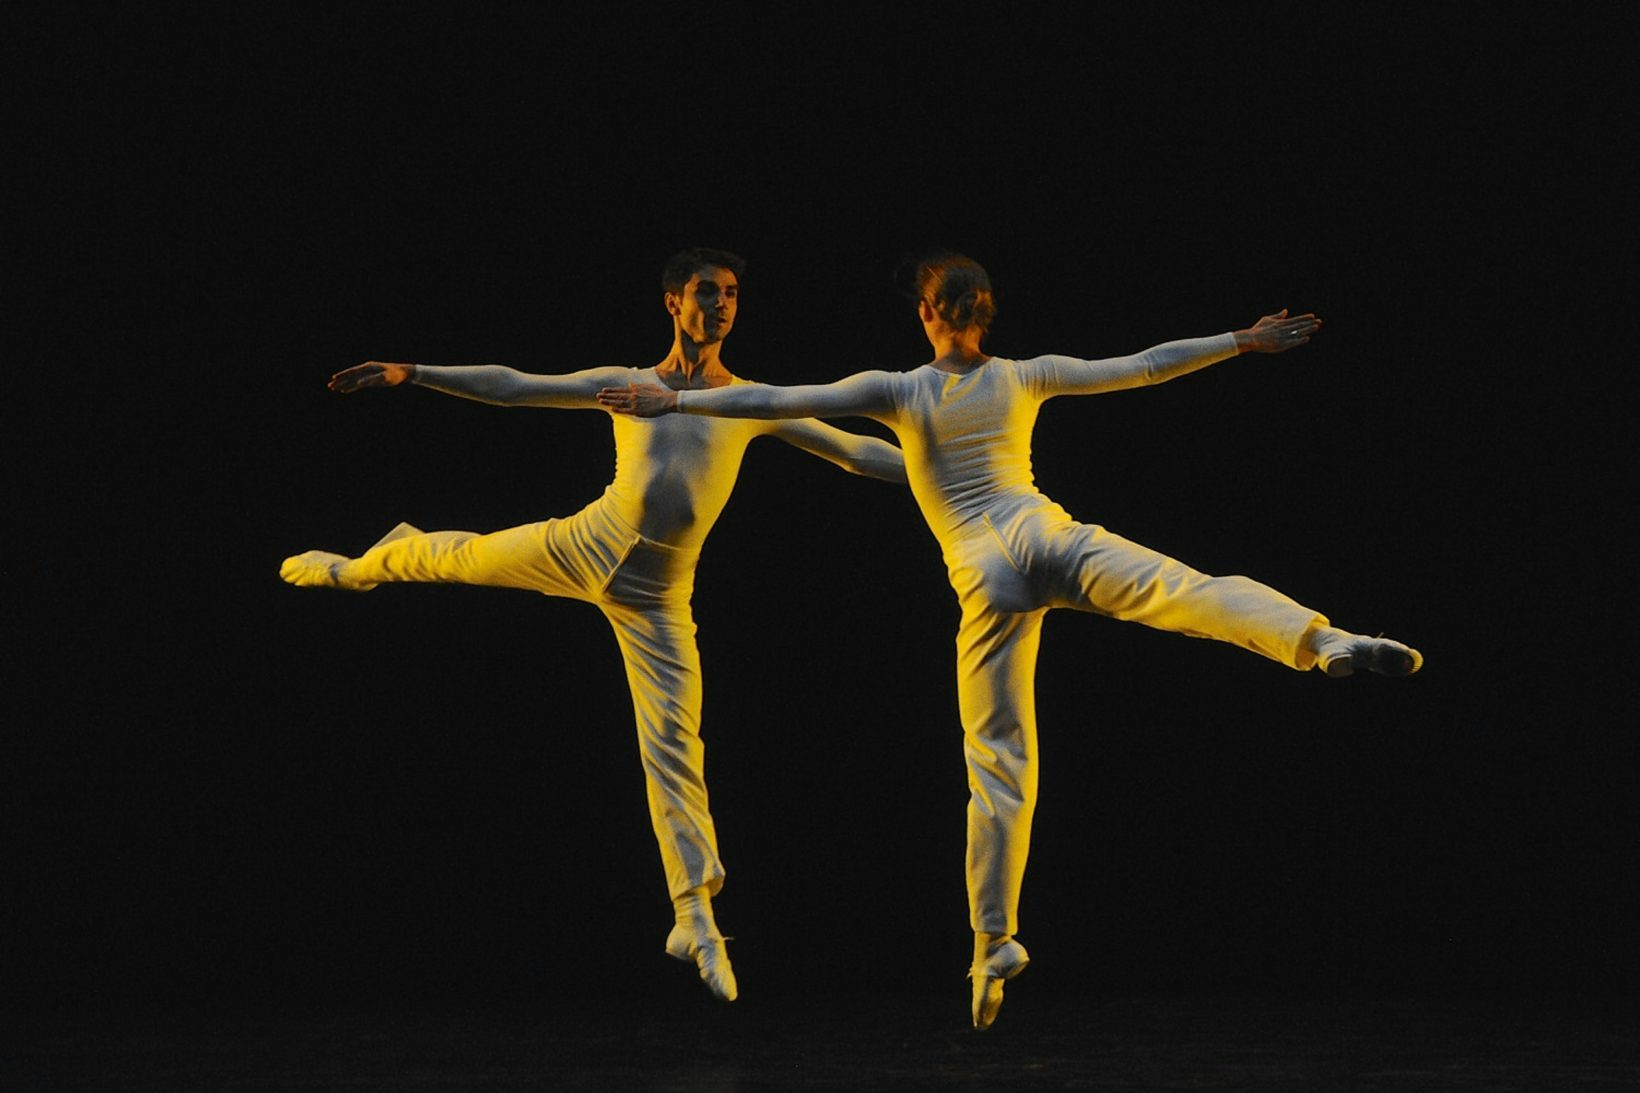 Luxe et ballet: un saut vers plus de diversité ?